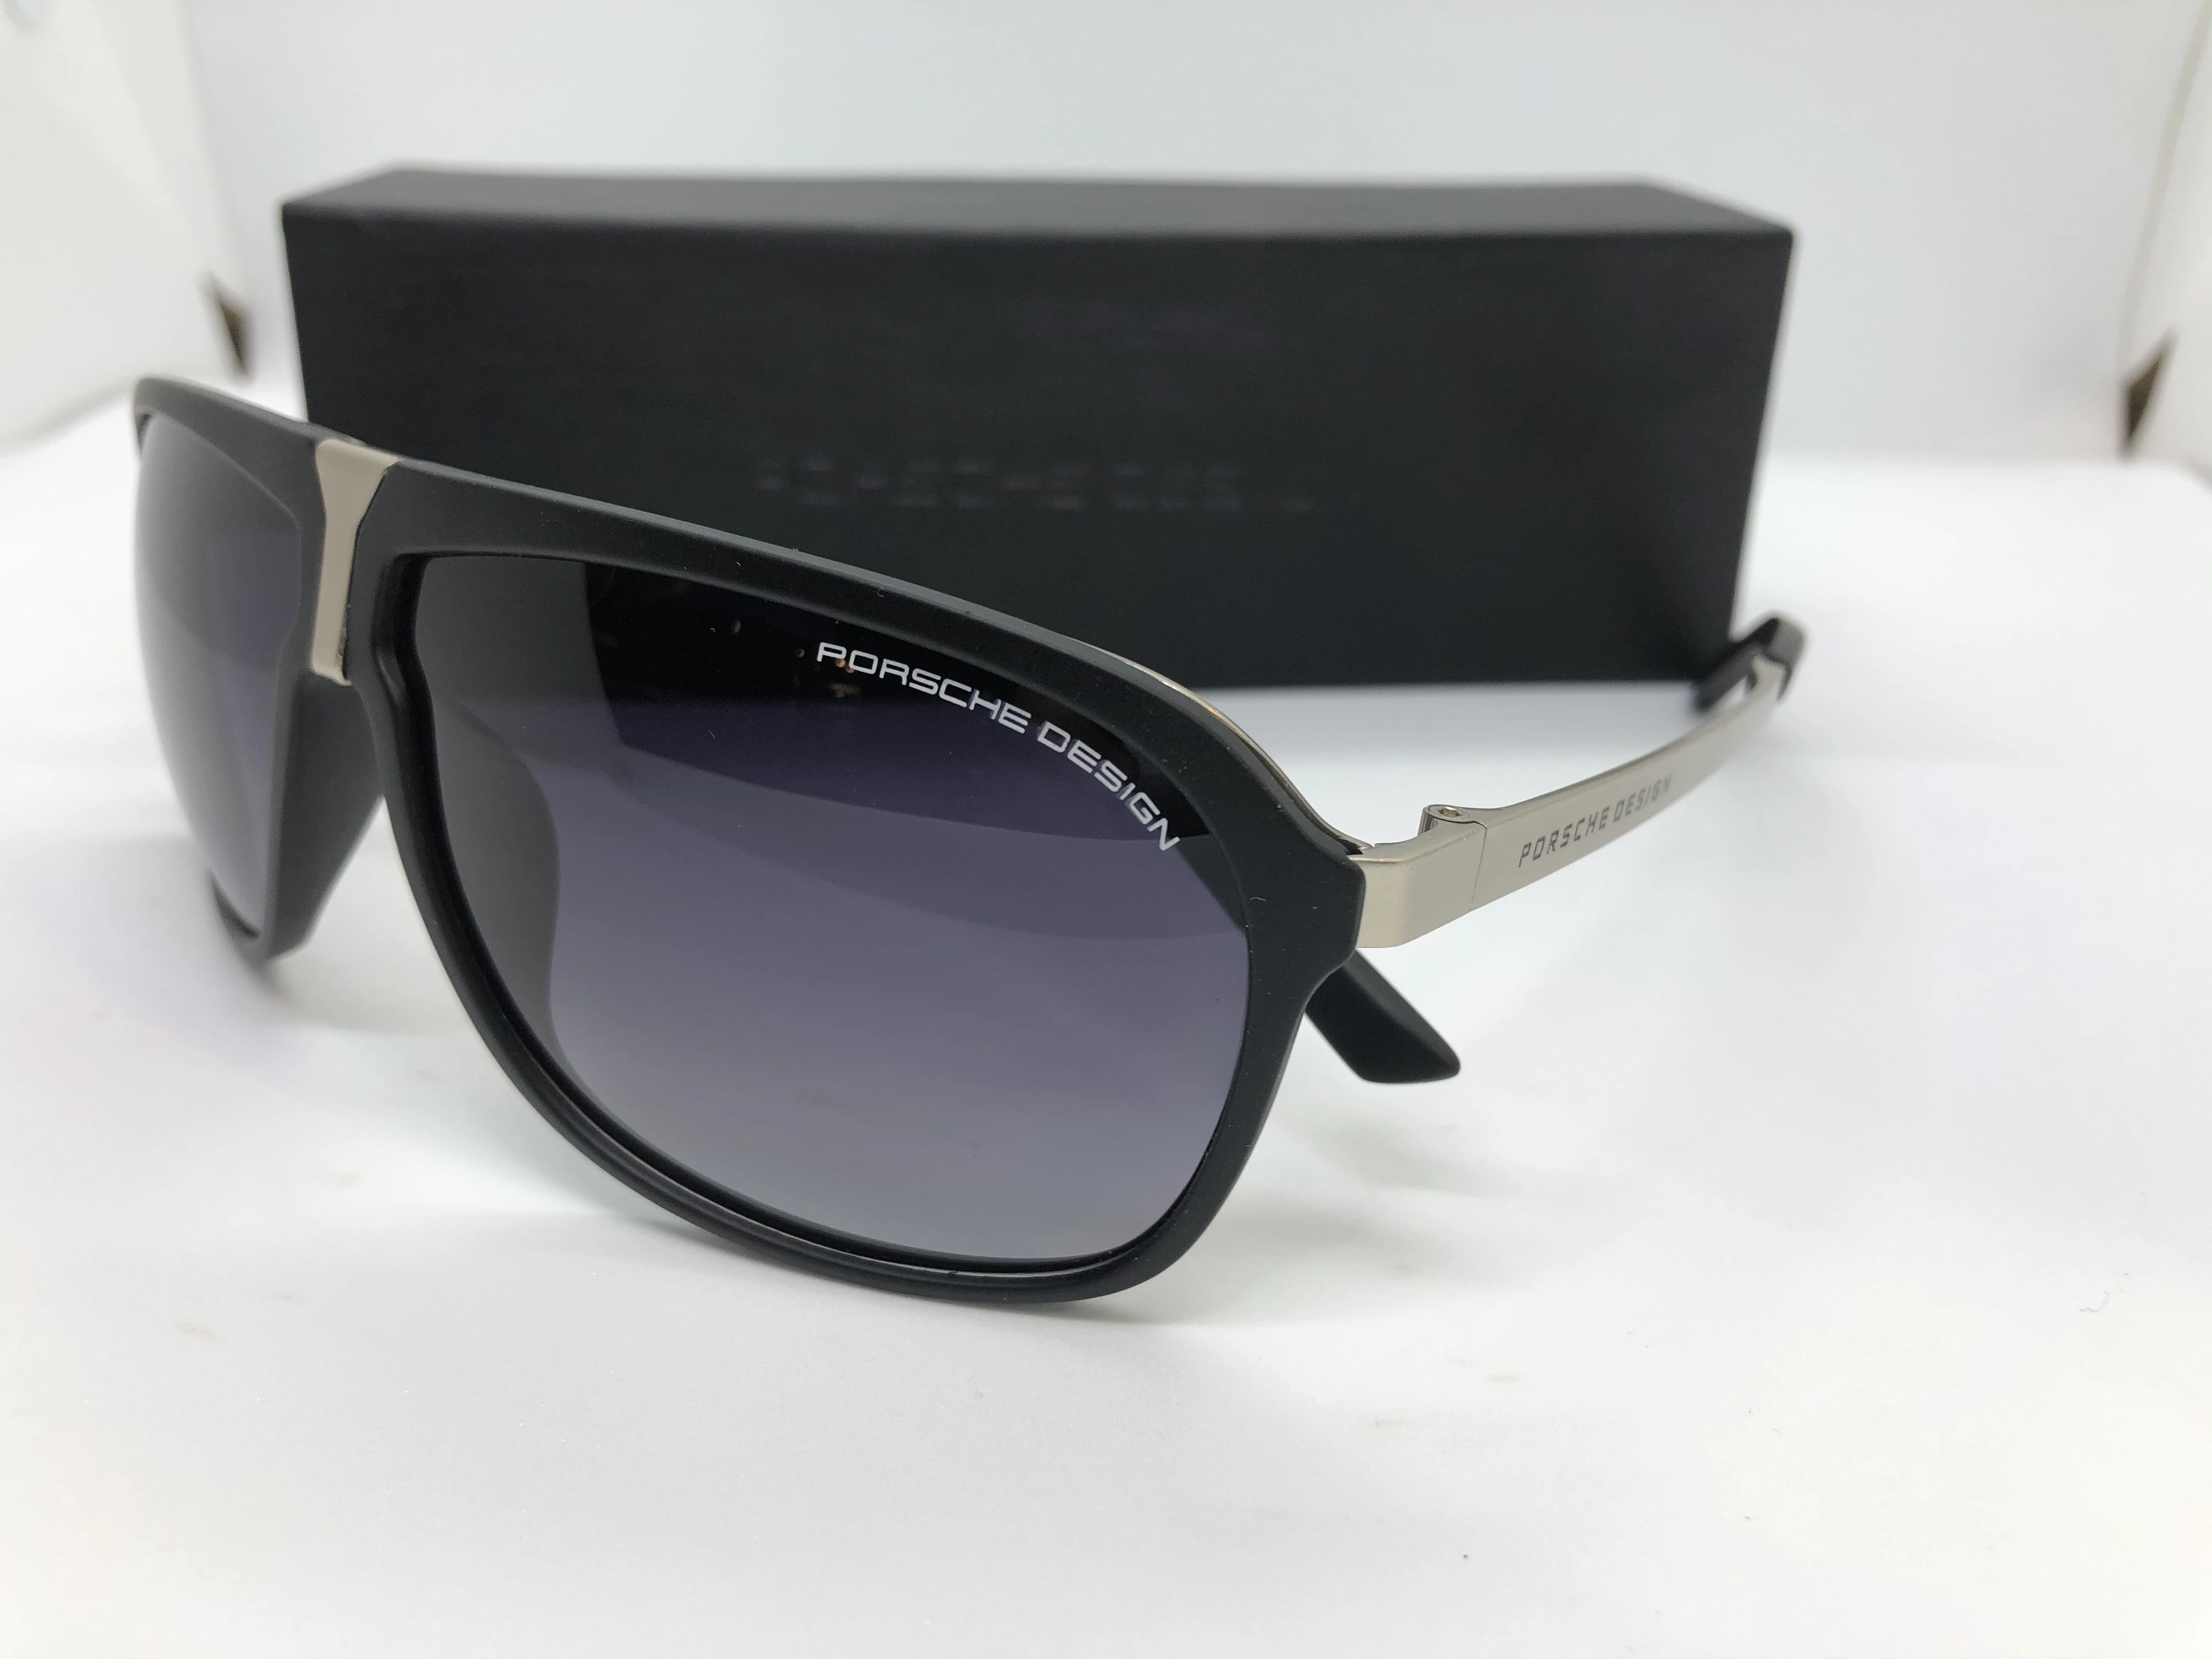 نظارة شمسية - من تصميم بورش - بإطاراسود بولي كاربونات - وعدسات سوداءمتدرجة - وزراع فضي معدن - بشعار الماركة - للرجال